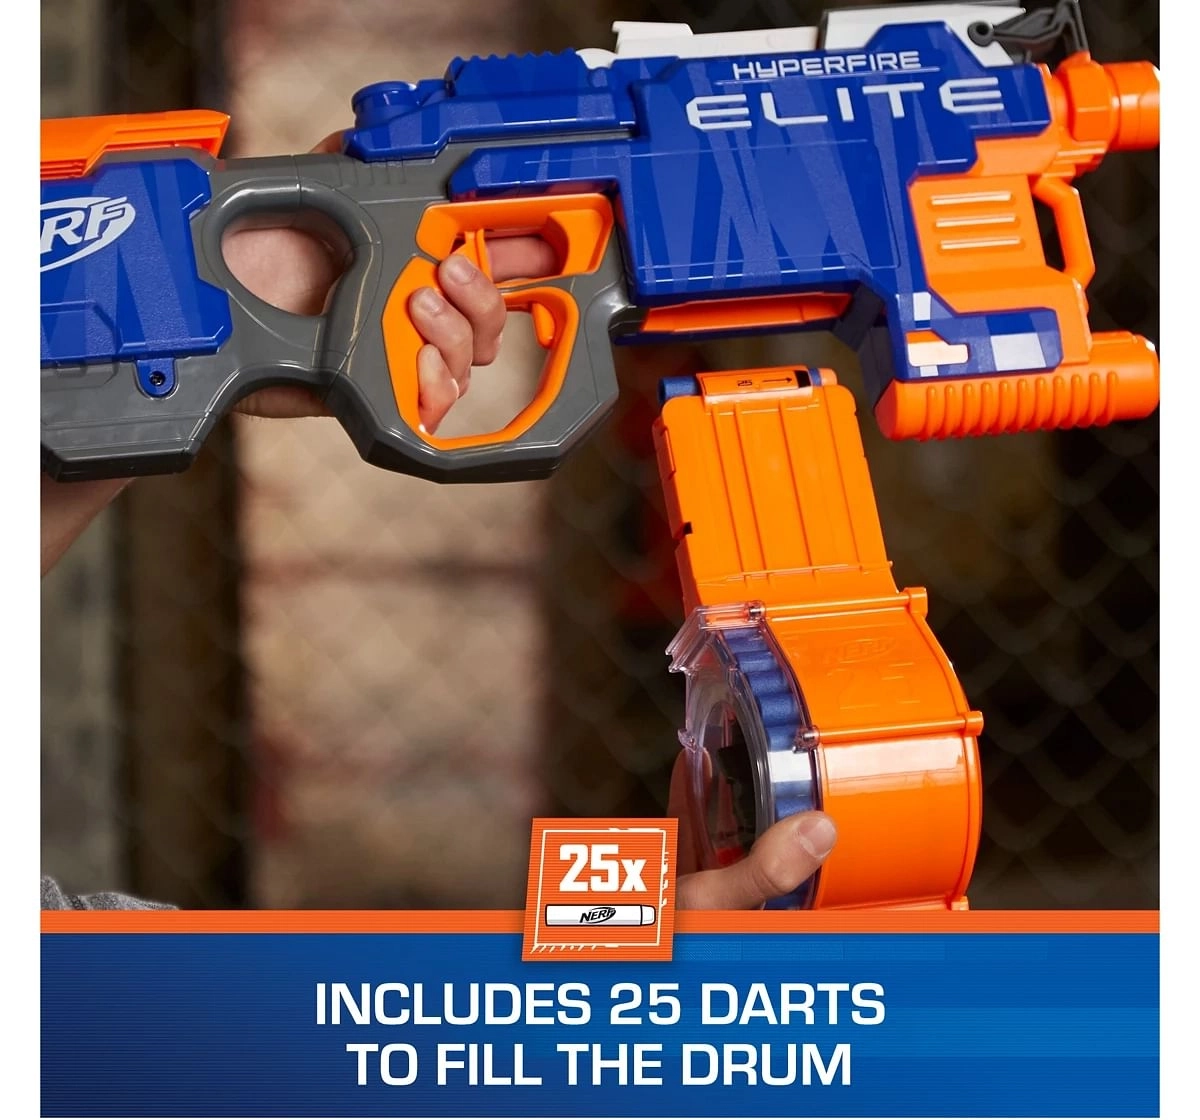 Nerf Hyper Fire Motorized Elite Blaster toy gun for kids 8Y+, Multicolour